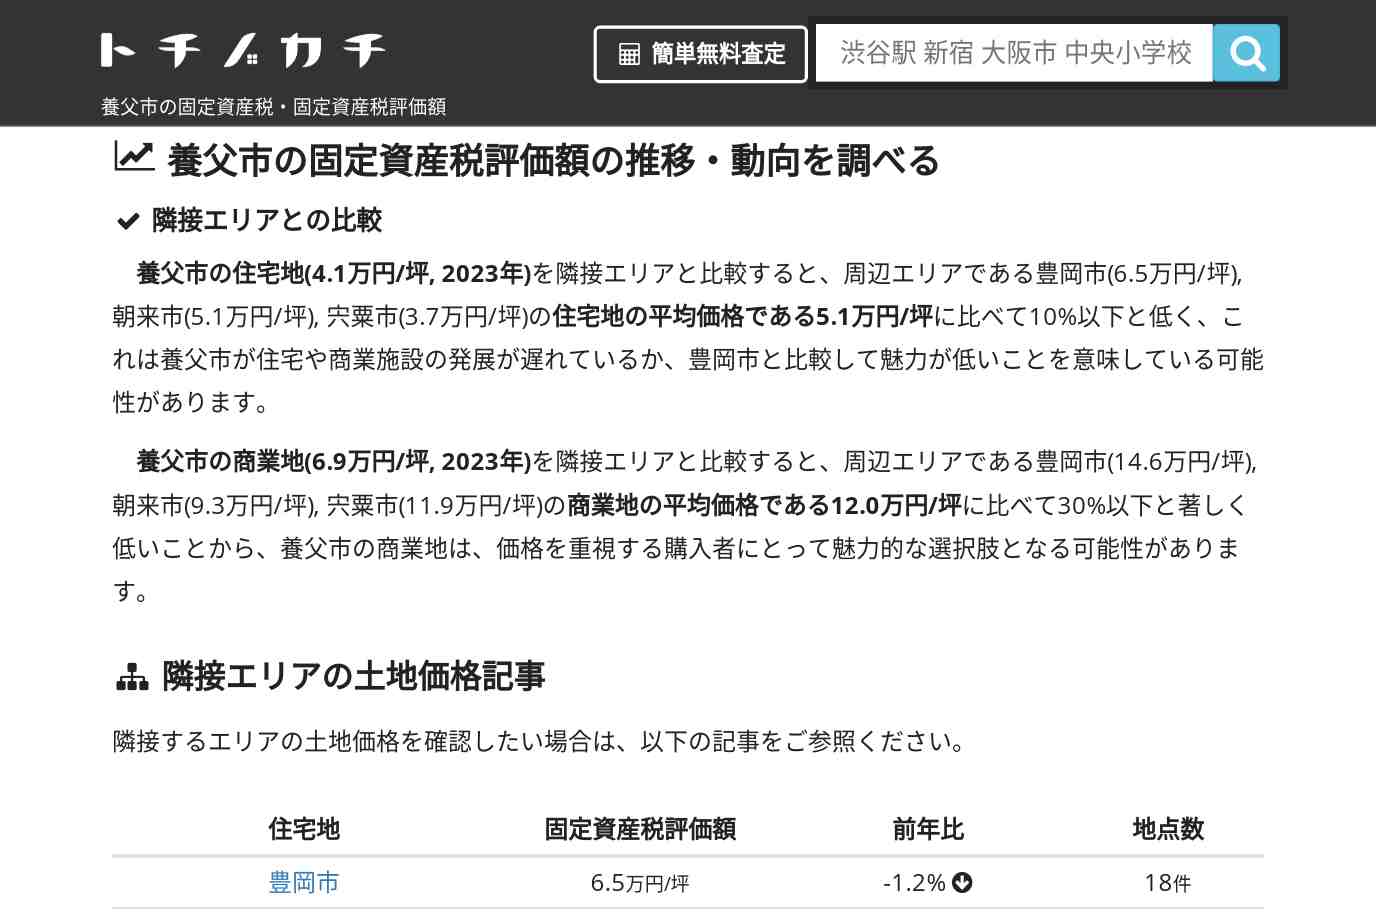 関宮中学校(兵庫県 養父市)周辺の固定資産税・固定資産税評価額 | トチノカチ